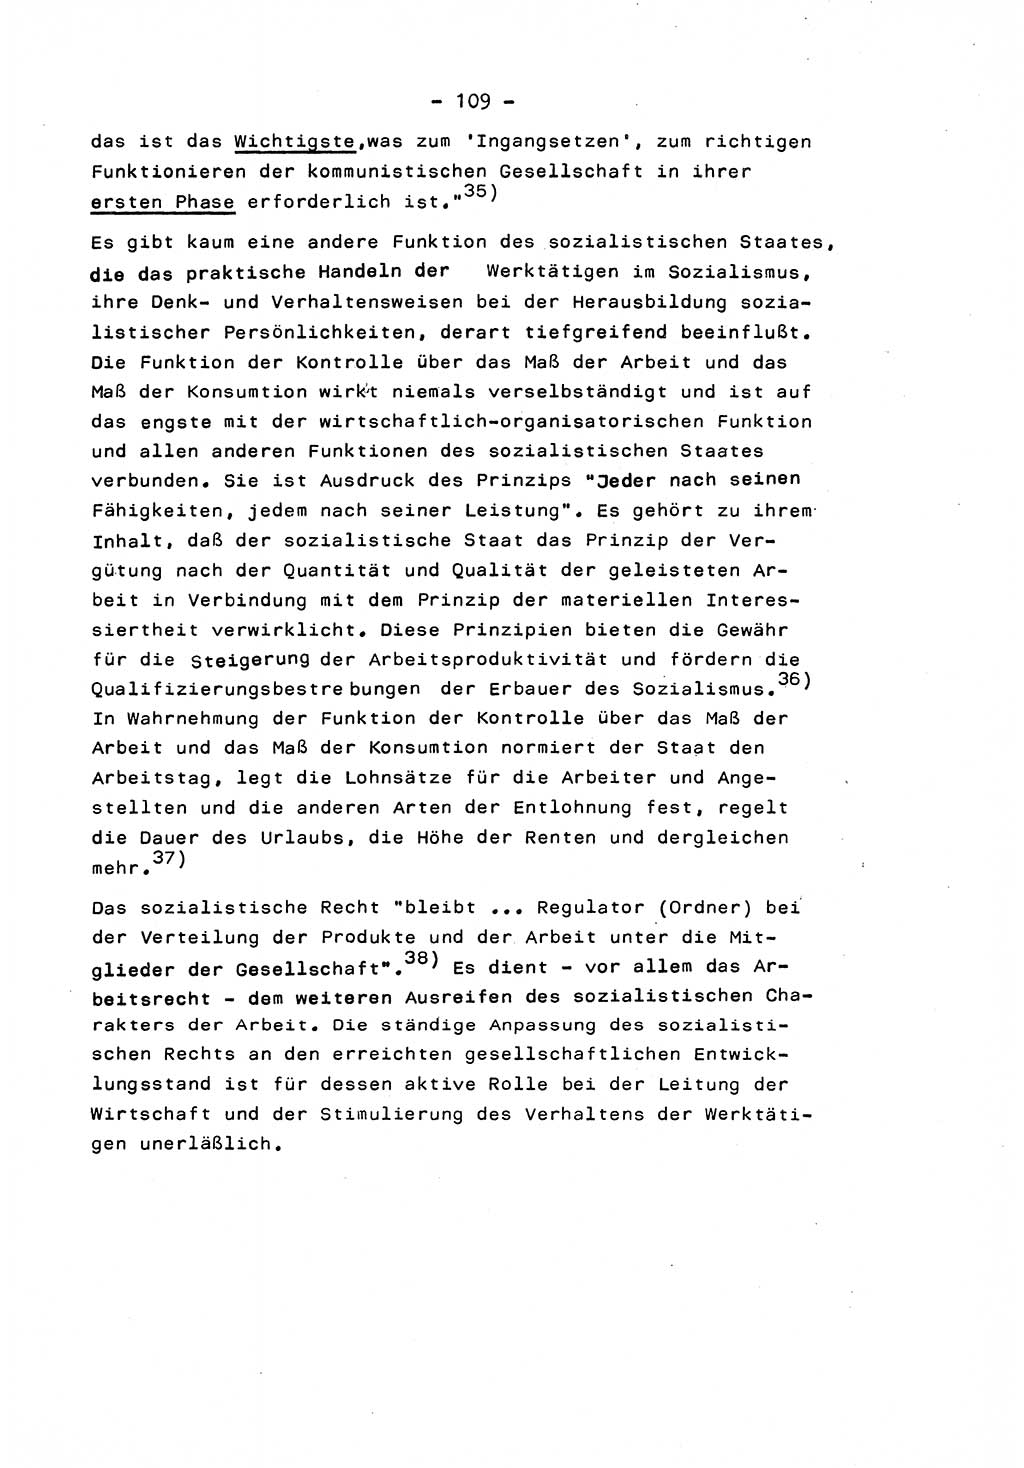 Marxistisch-leninistische Staats- und Rechtstheorie [Deutsche Demokratische Republik (DDR)] 1975, Seite 109 (ML St.-R.-Th. DDR 1975, S. 109)